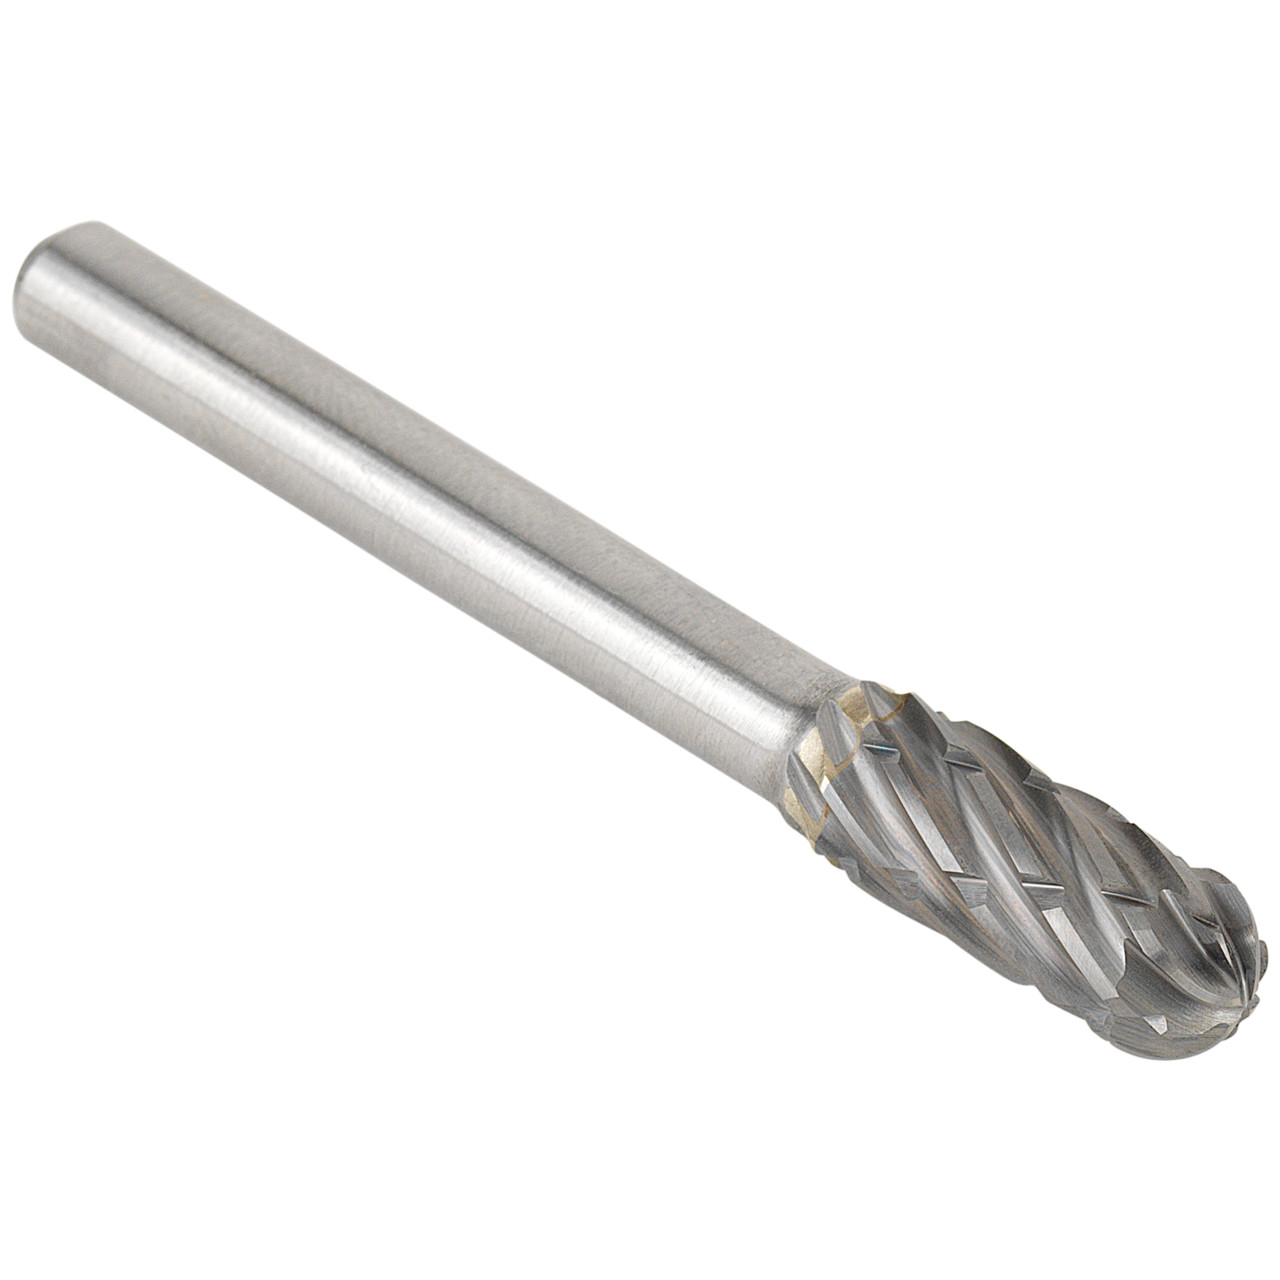 Tyrolit Hardmetalen frees DxT-SxL 6x18-6x50 Voor staal, vorm: 52WRC - cilindrisch, Art. 34213581